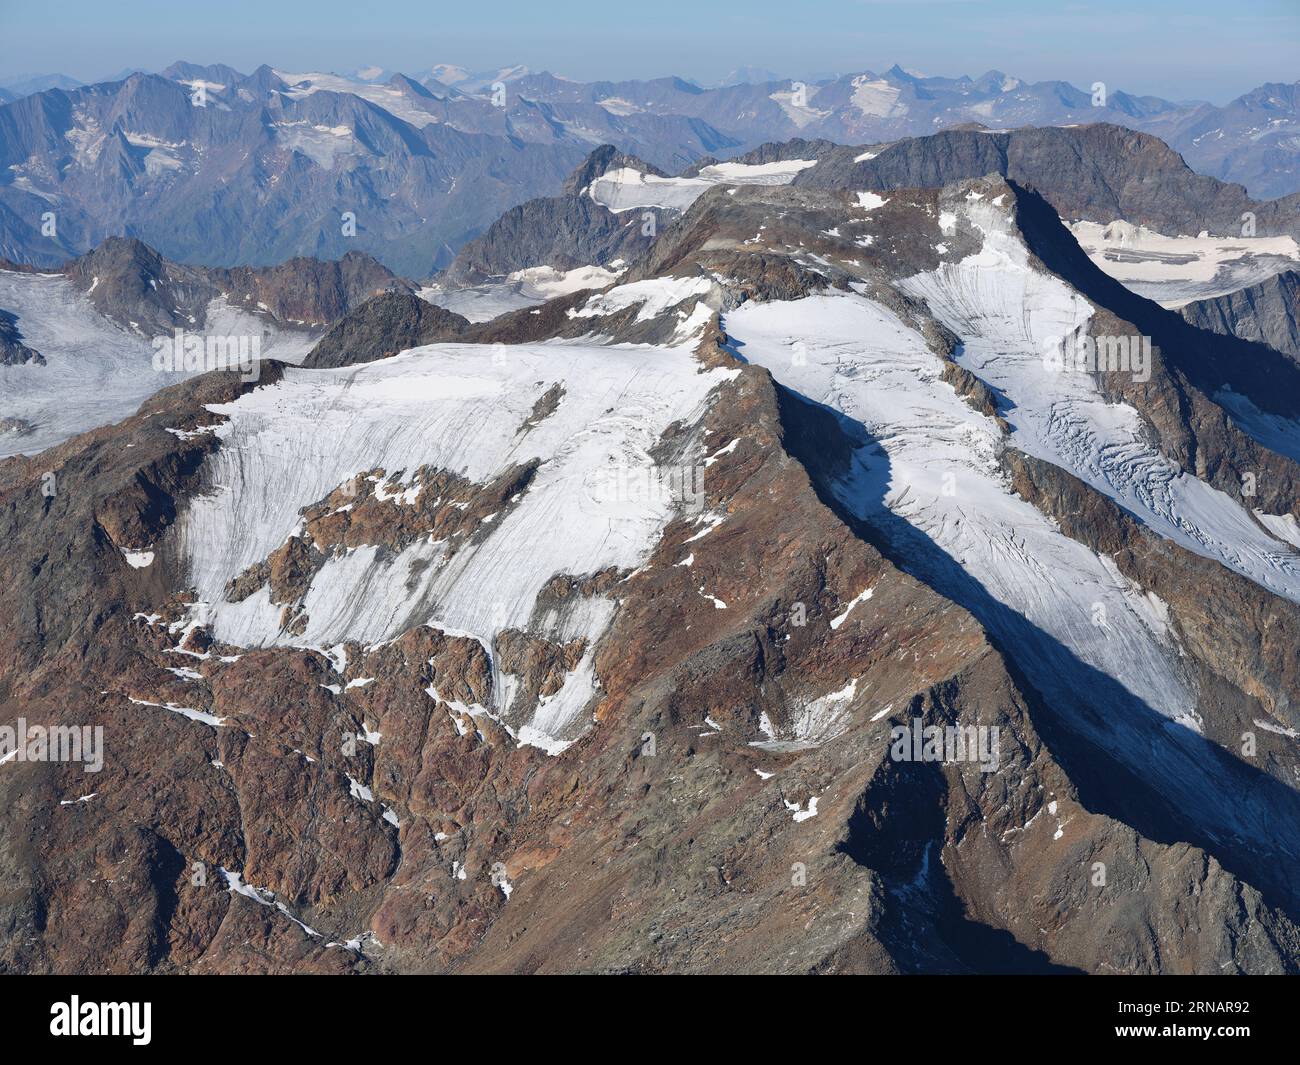 VUE AÉRIENNE. Côté nord du Wilder Freiger (altitude : 3418m). Neustift im Stubaital, Tyrol, Autriche. Banque D'Images